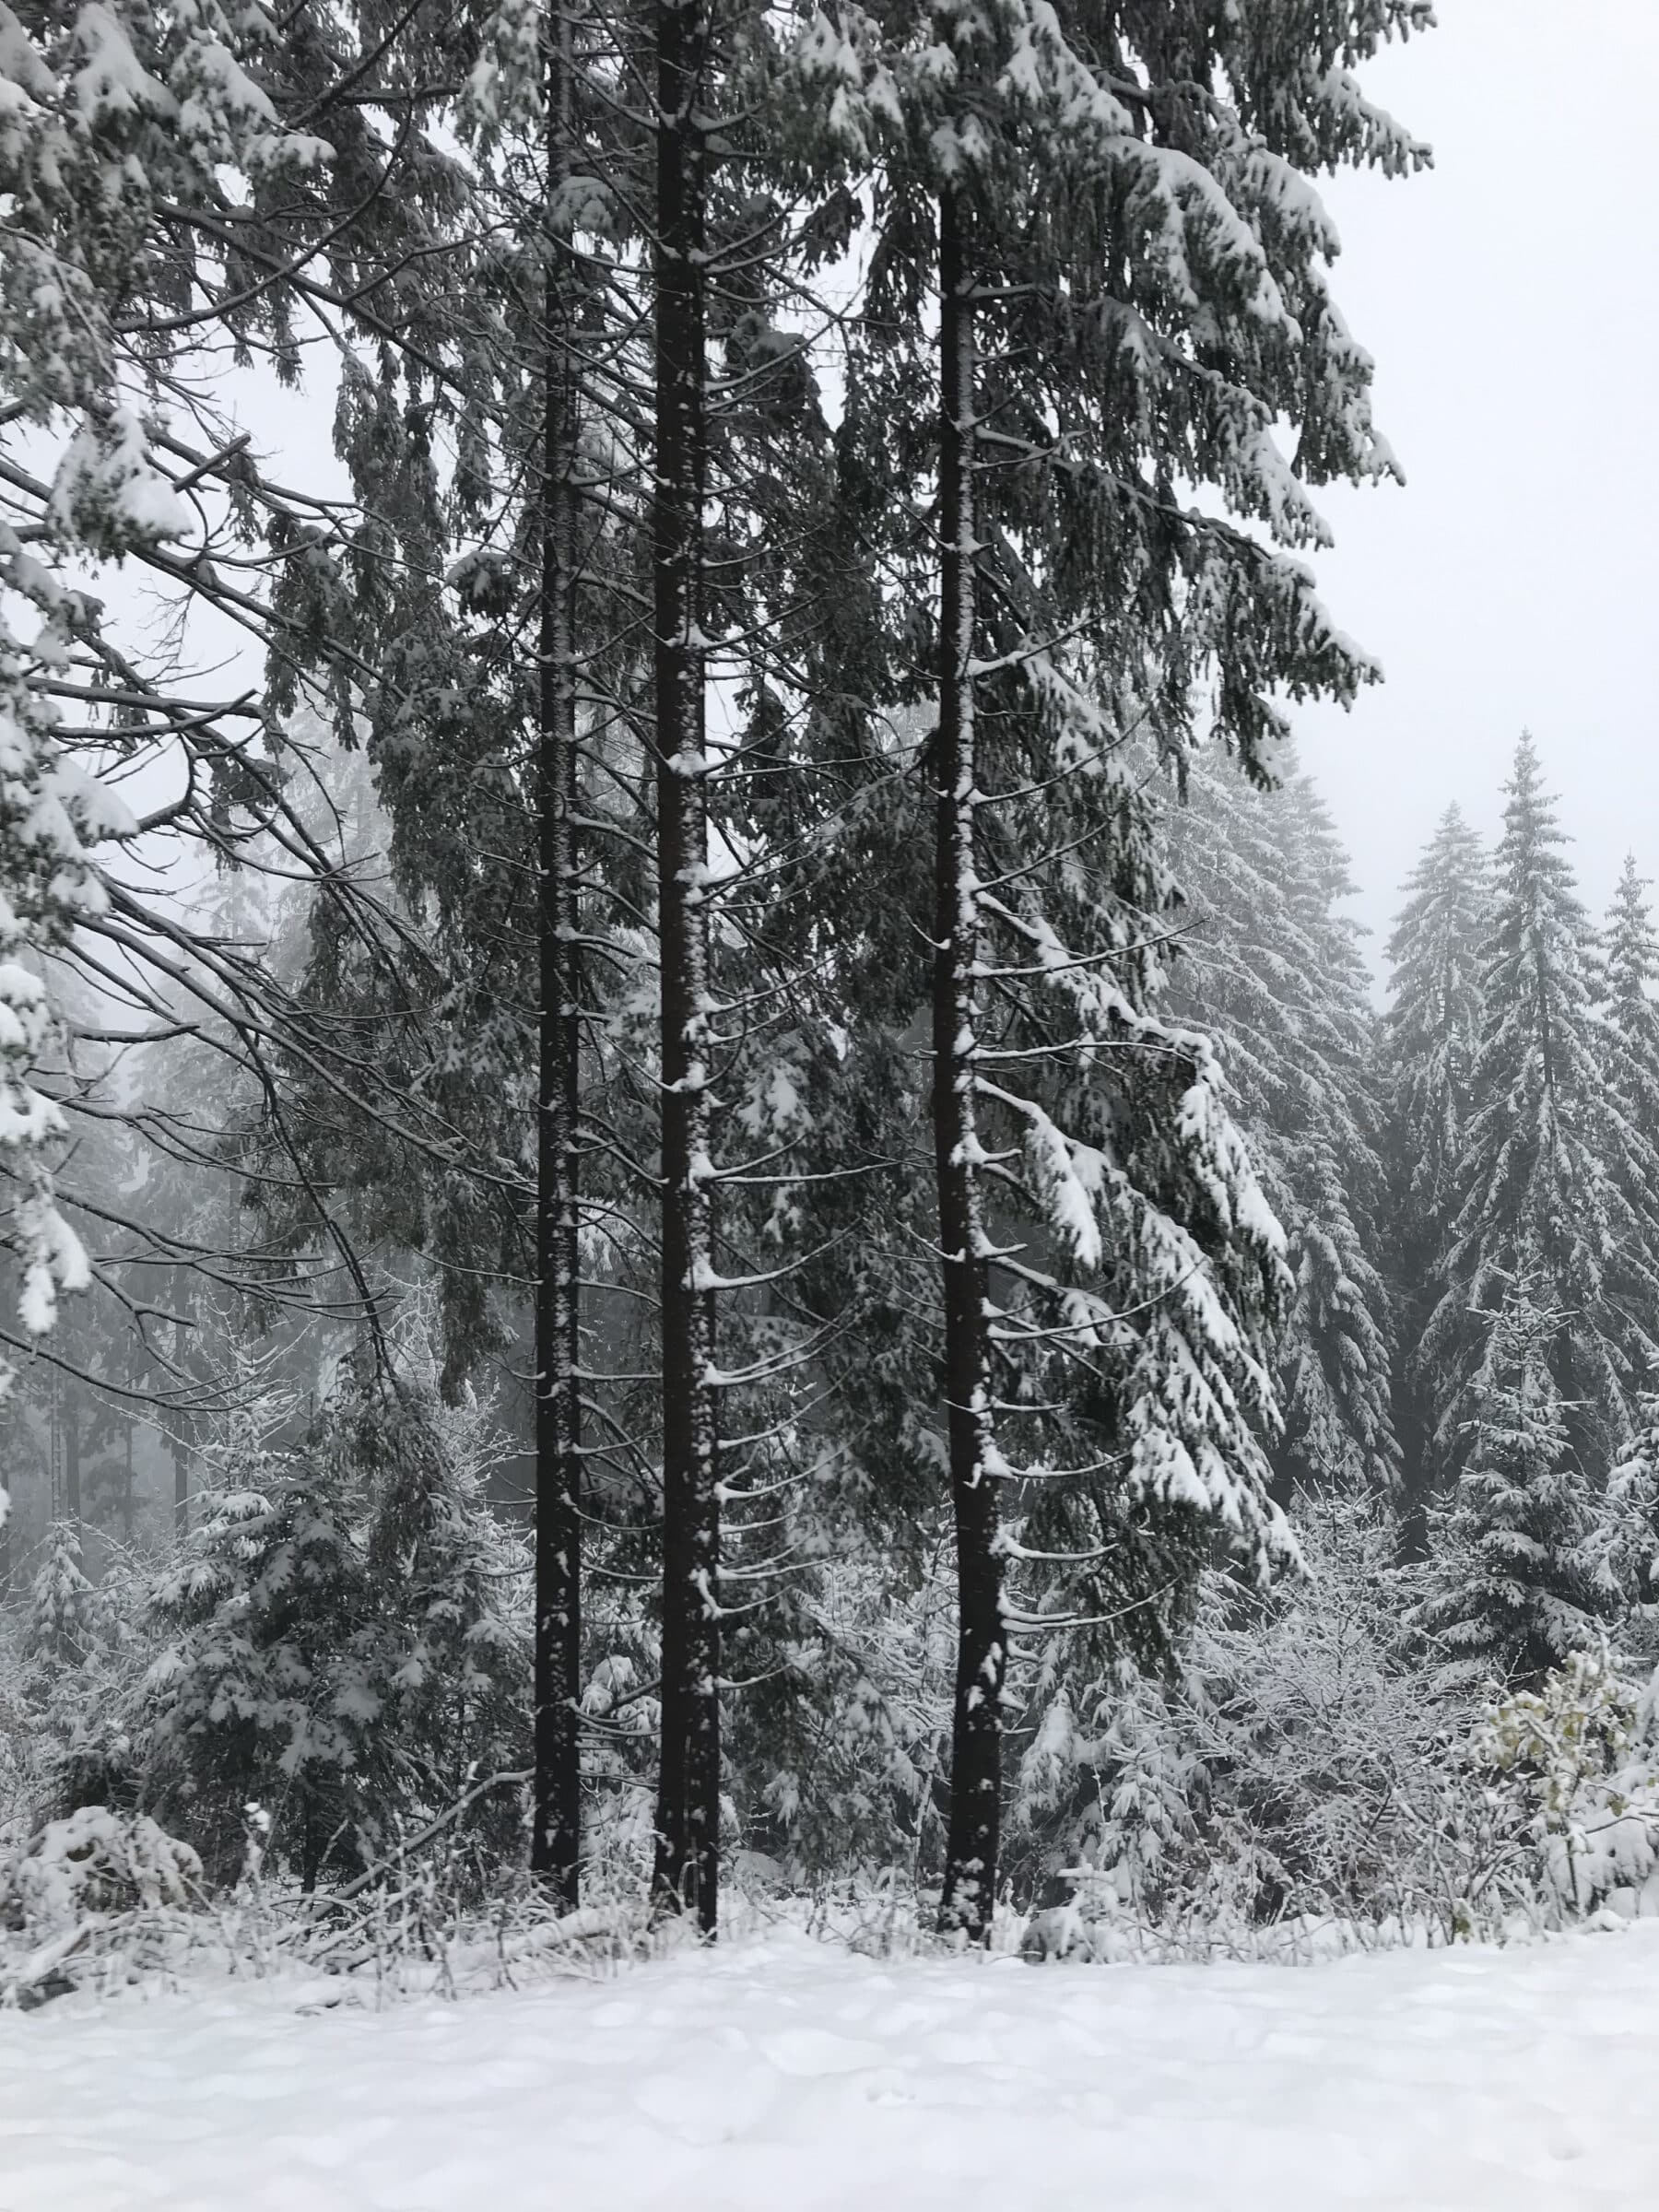 Die sneeubedekte bome van die Swartwoud